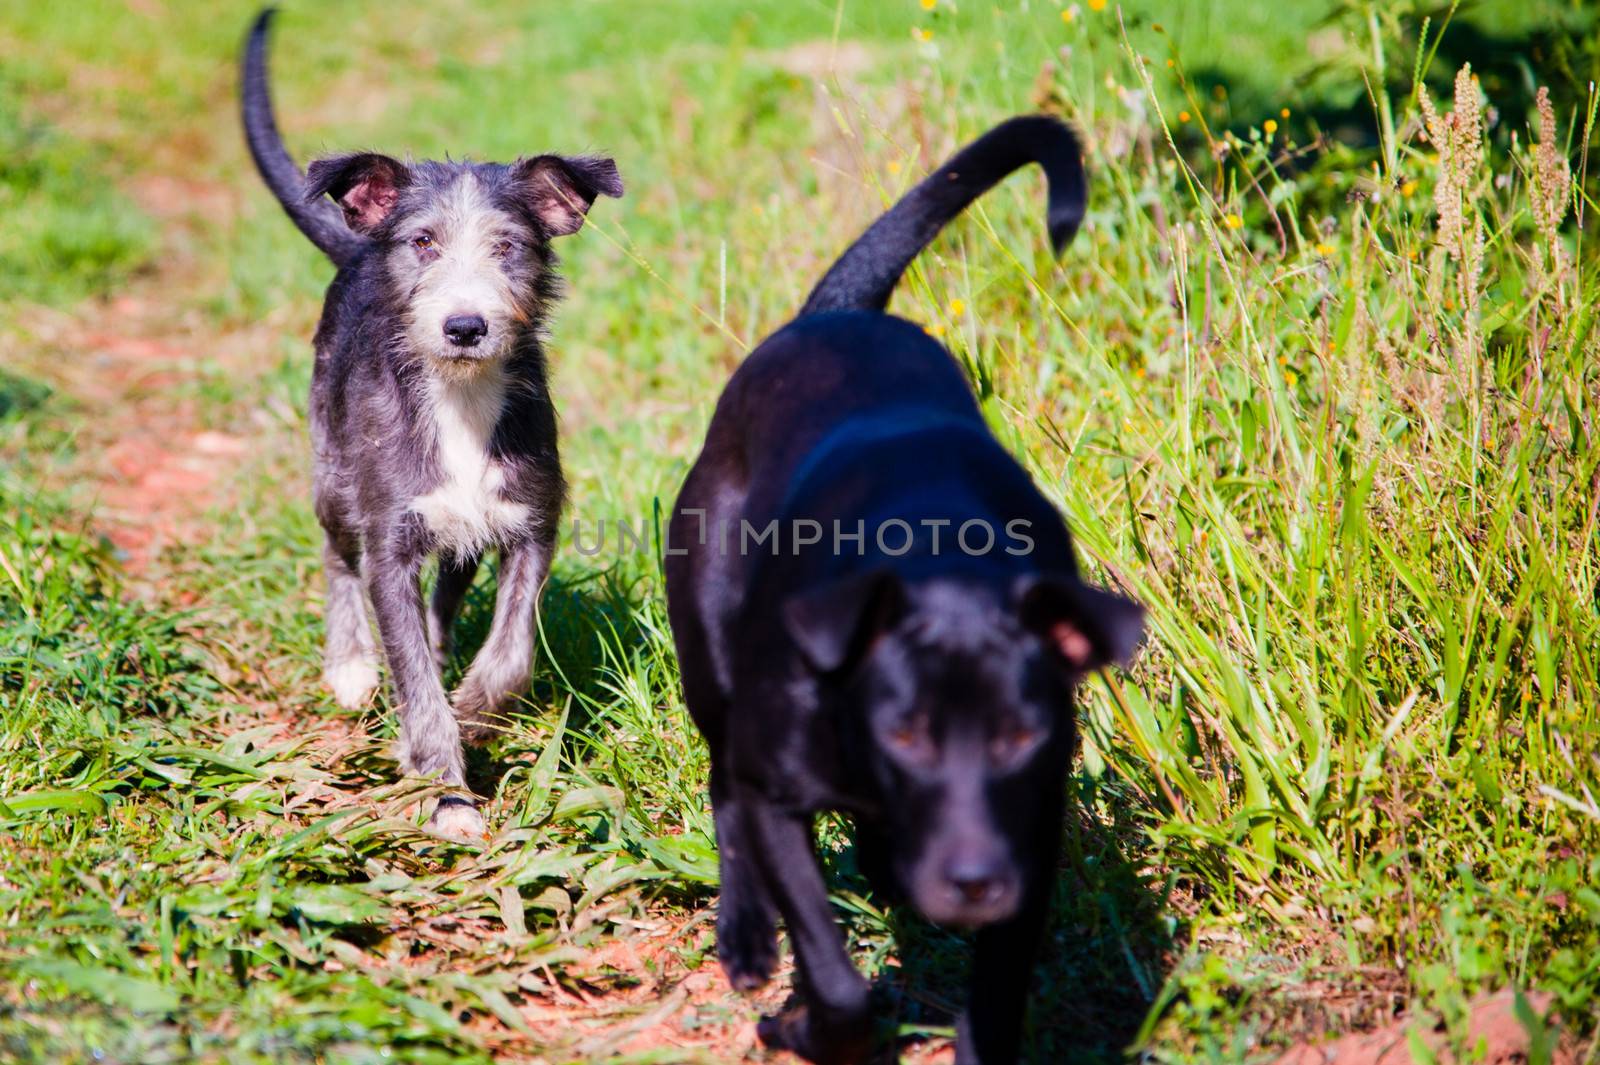 Dogs walking in countryside by CelsoDiniz